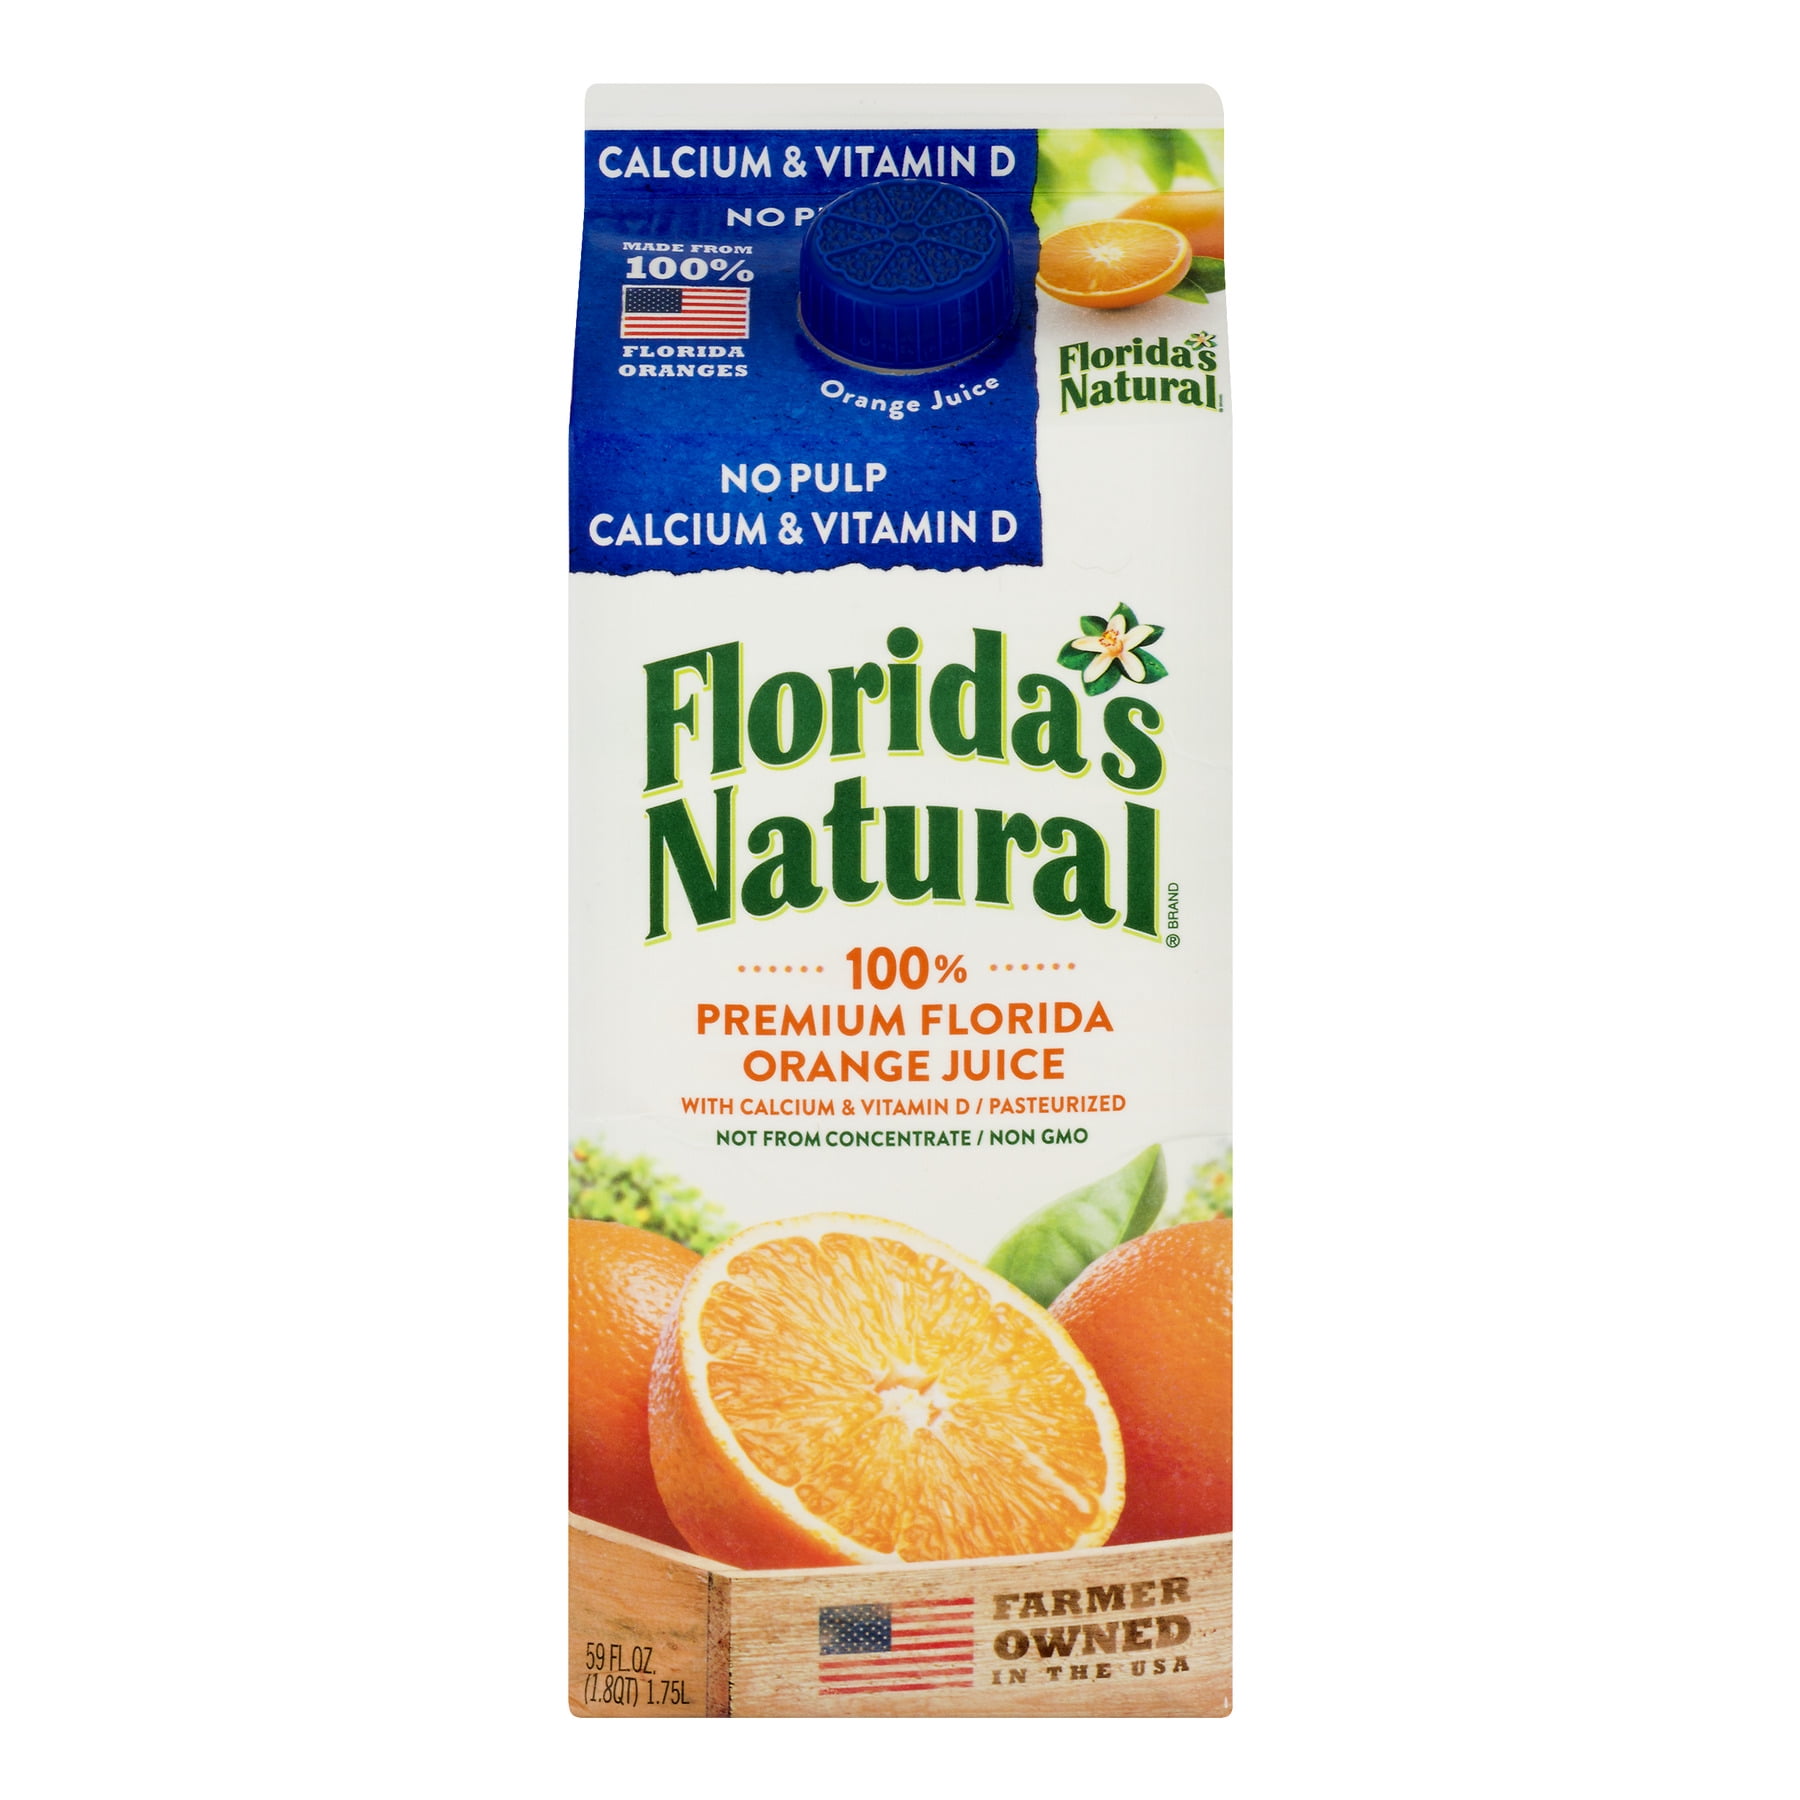 Florida's Natural, 100% Orange Juice No Pulp Calcium Vitamin D, 59 Fl